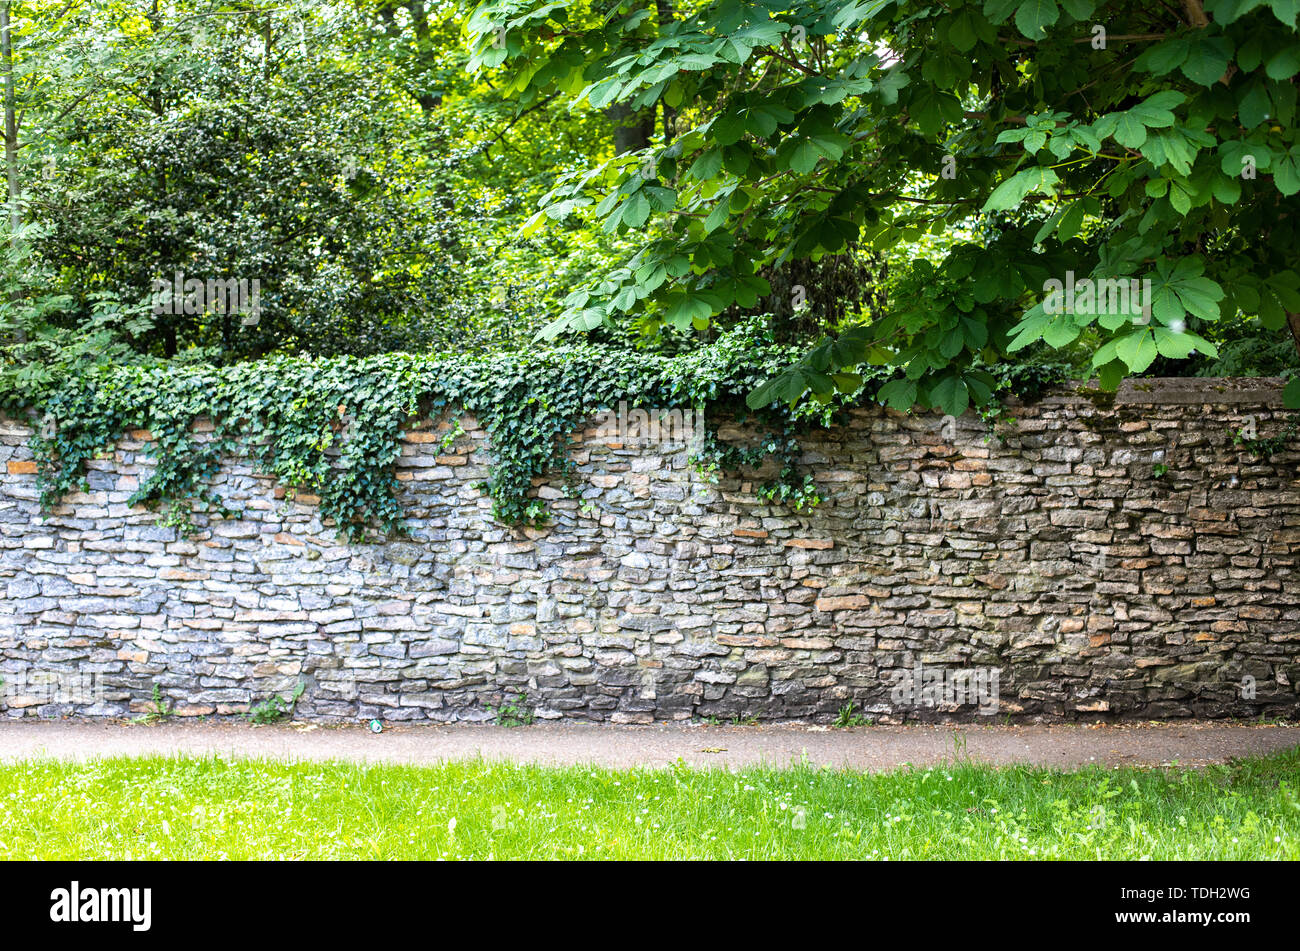 Muro di pietra ricoperta di vegetazione. Il verde folto dietro la parete. Il percorso lungo la parete fra il verde abbondante. Recinzione in pietra in stile medievale. Foto Stock